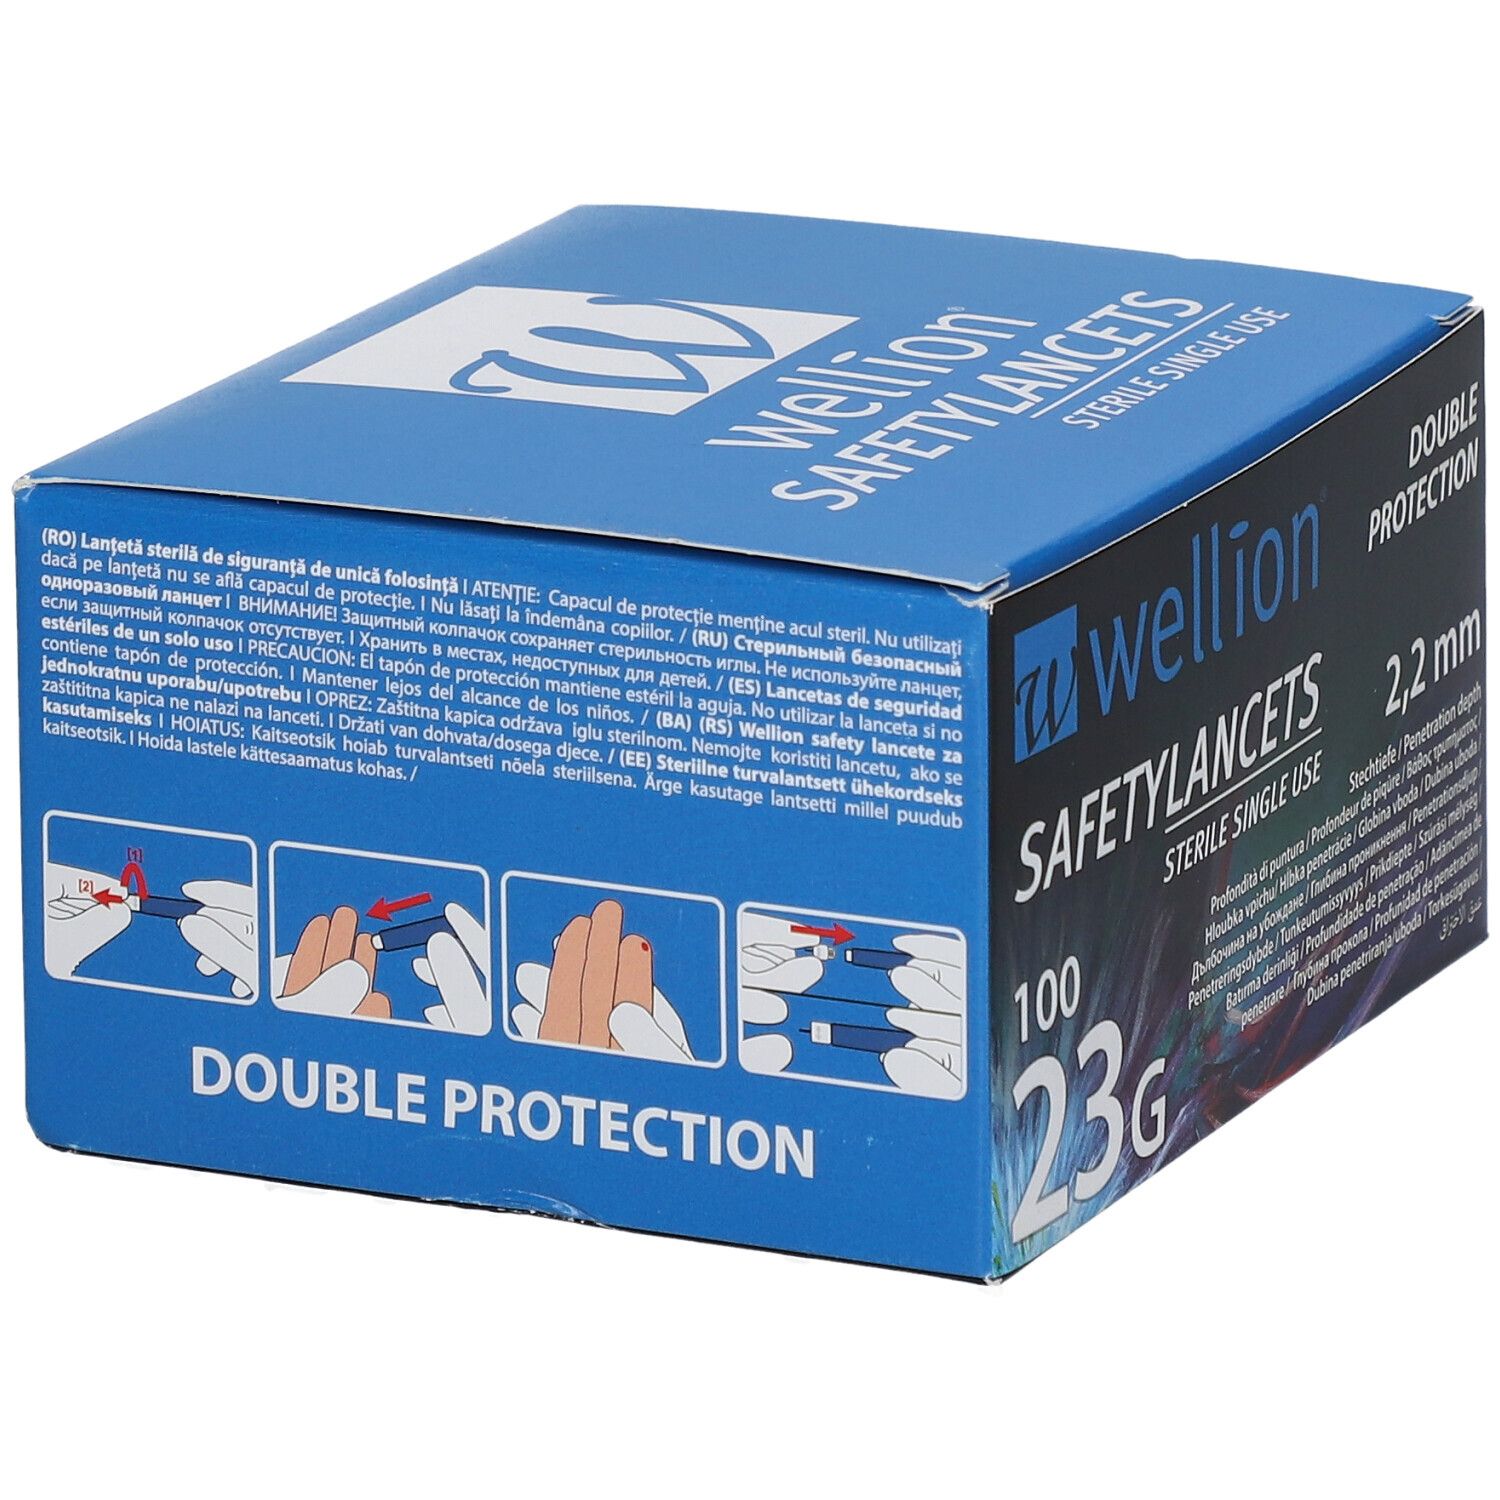 Wellion® Safetylancets steril 2,2 mm 23 G